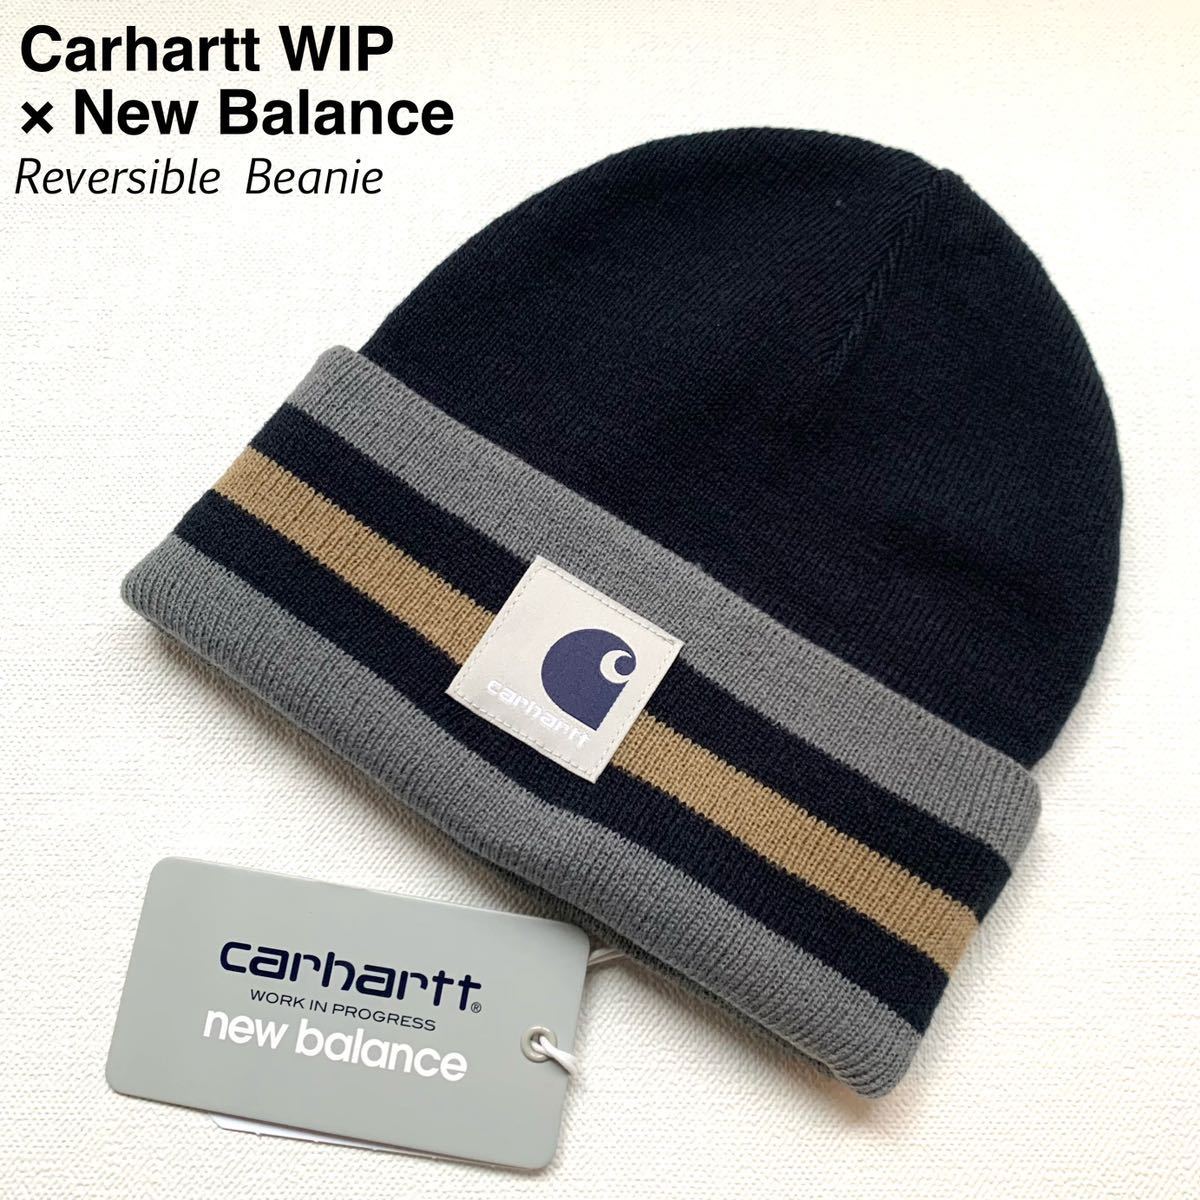 新品 ニューバランス New Balance x カーハート Carhartt WIP コラボ REVERSIBLE BEANIE リバーシブル ビーニー ニット キャップ ニット帽